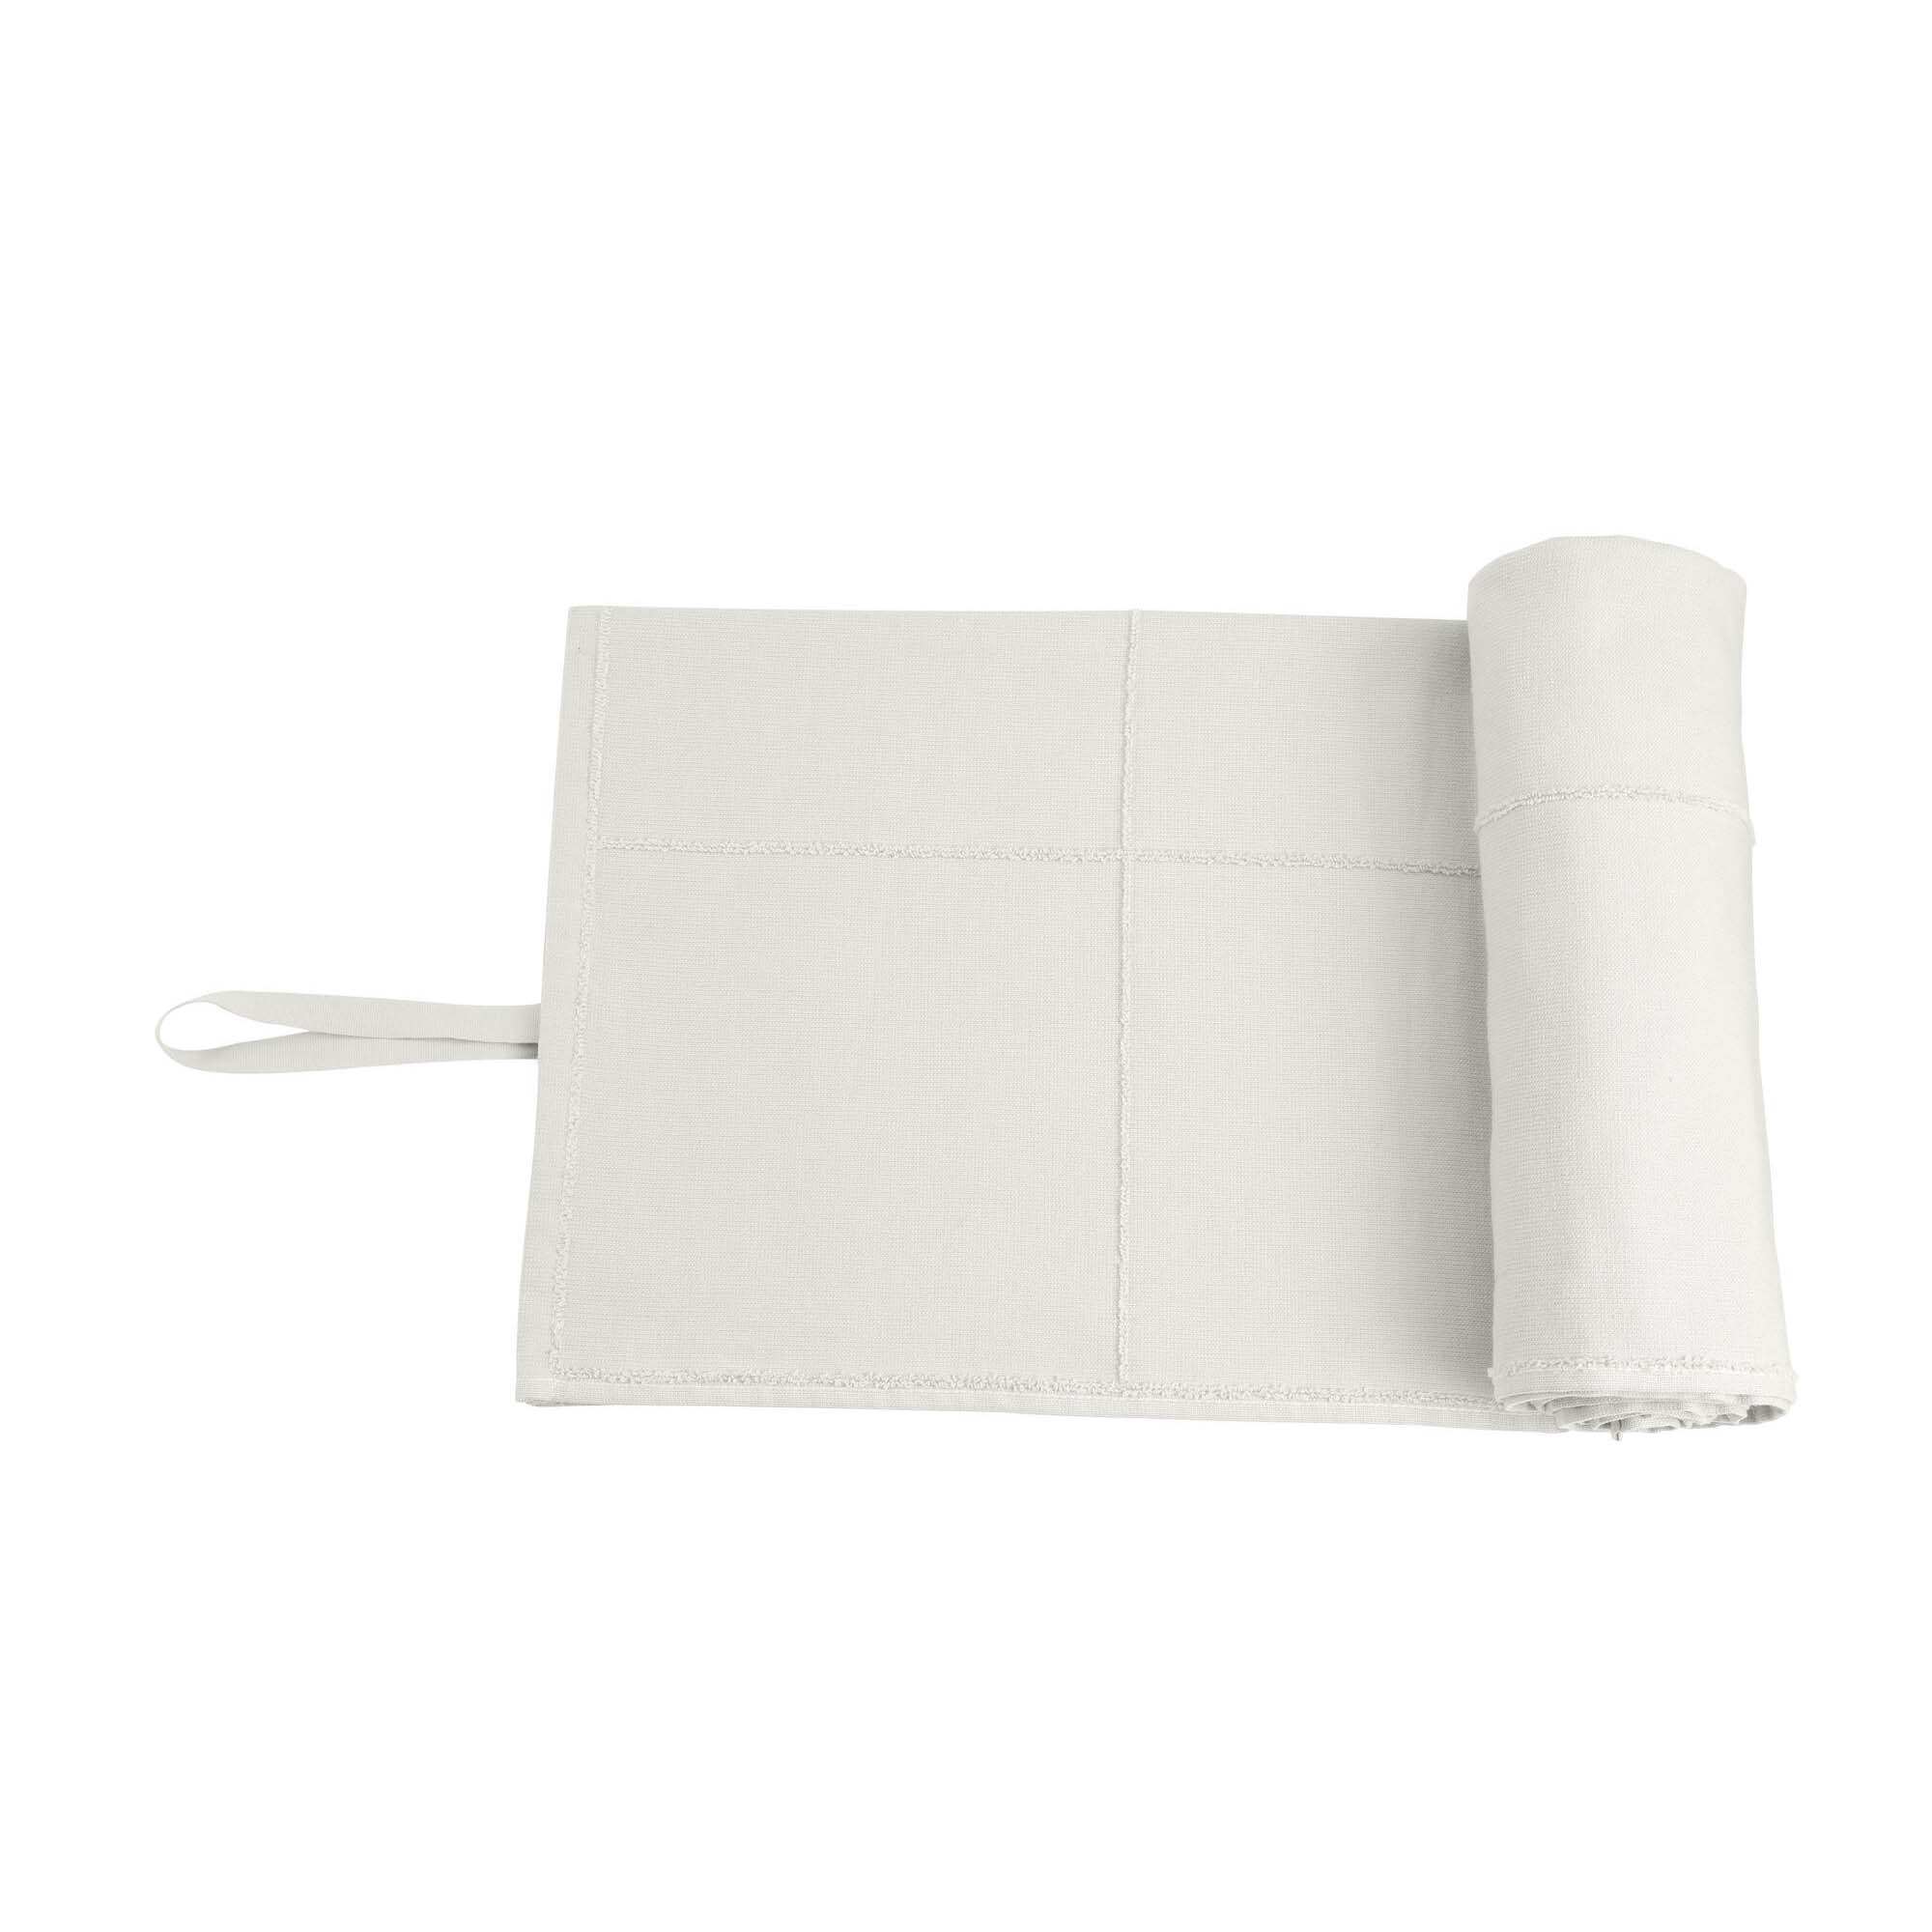 CALM Håndklæde to Go, Natural white 60x120 cm